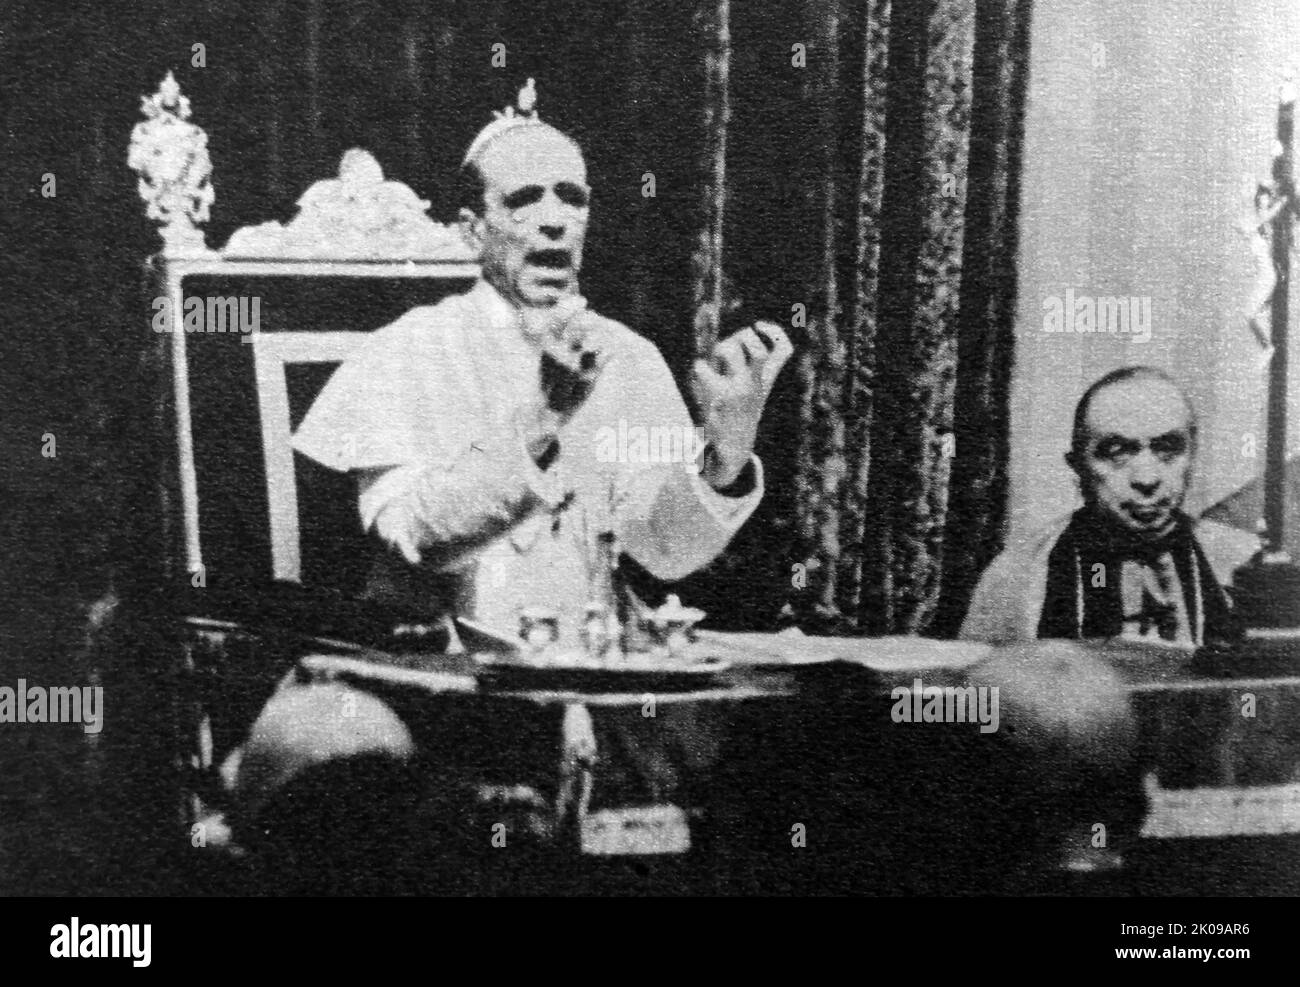 Papa Pio XII, nato Eugenio Maria Giuseppe Giovanni Pacelli (2 marzo 1876 – 9 ottobre 1958), fu capo della Chiesa cattolica e sovrano dello Stato della Città del Vaticano dal 2 marzo 1939 alla sua morte nel 1958. Foto Stock